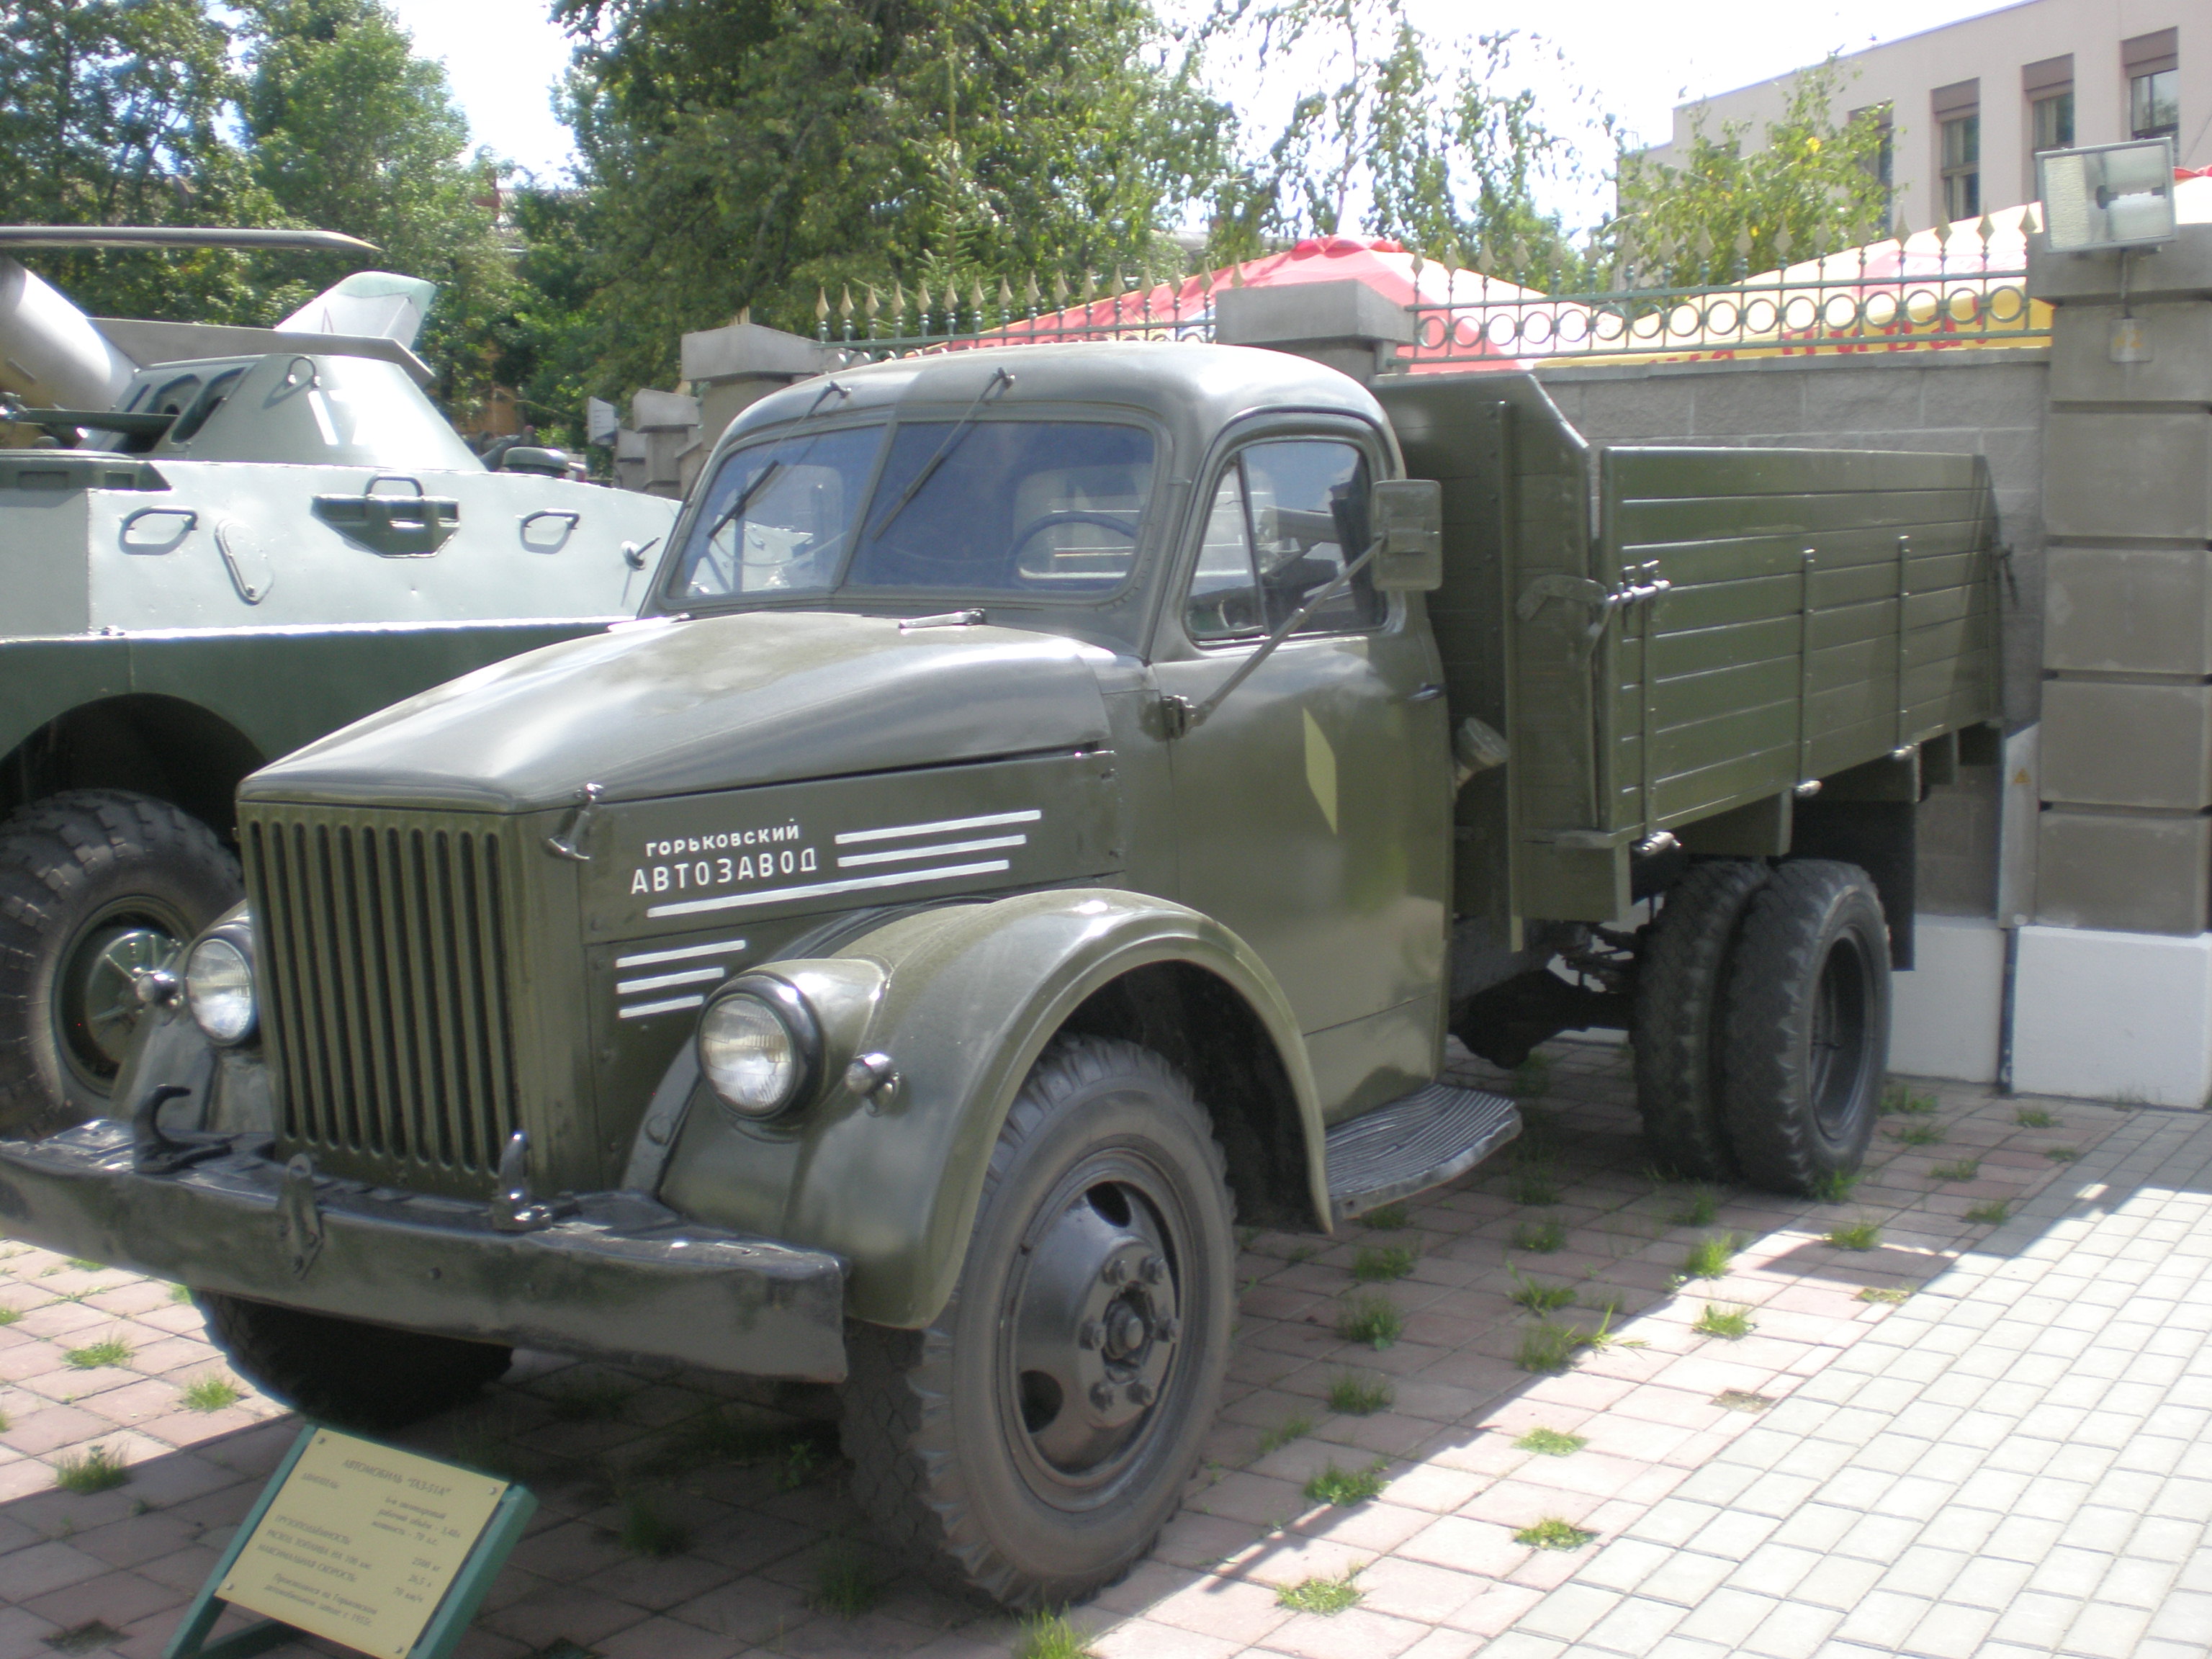 File:GAZ-51 truck in a military museum in Belarus.jpg - Wikimedia ...